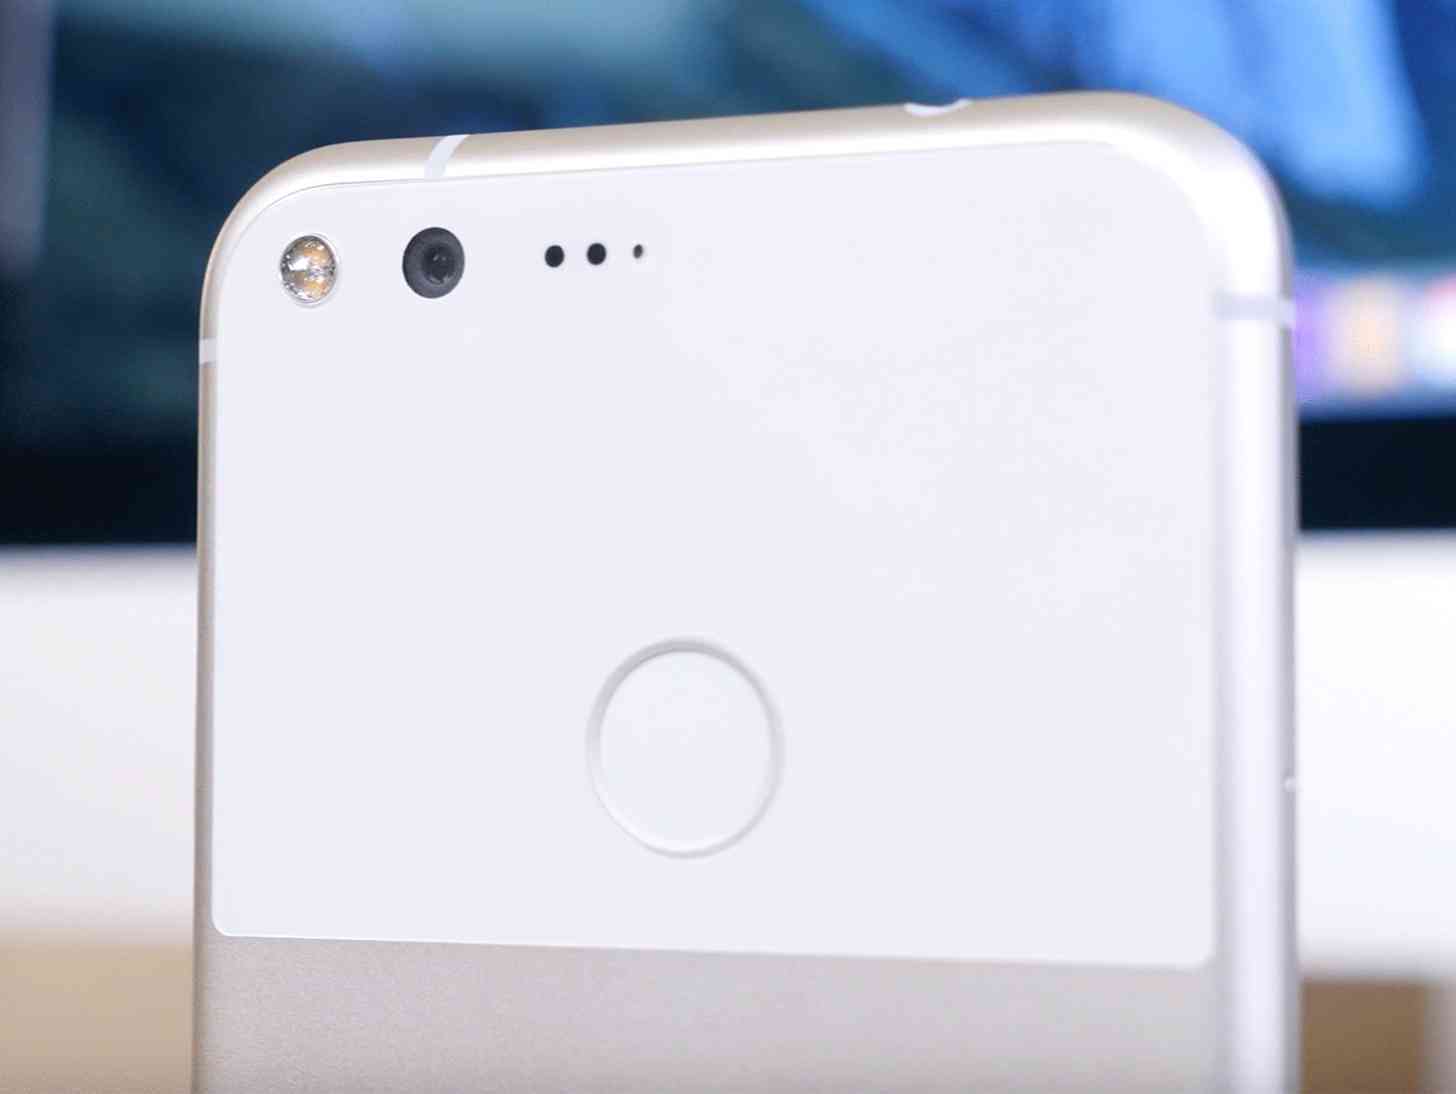 Google Pixel camera